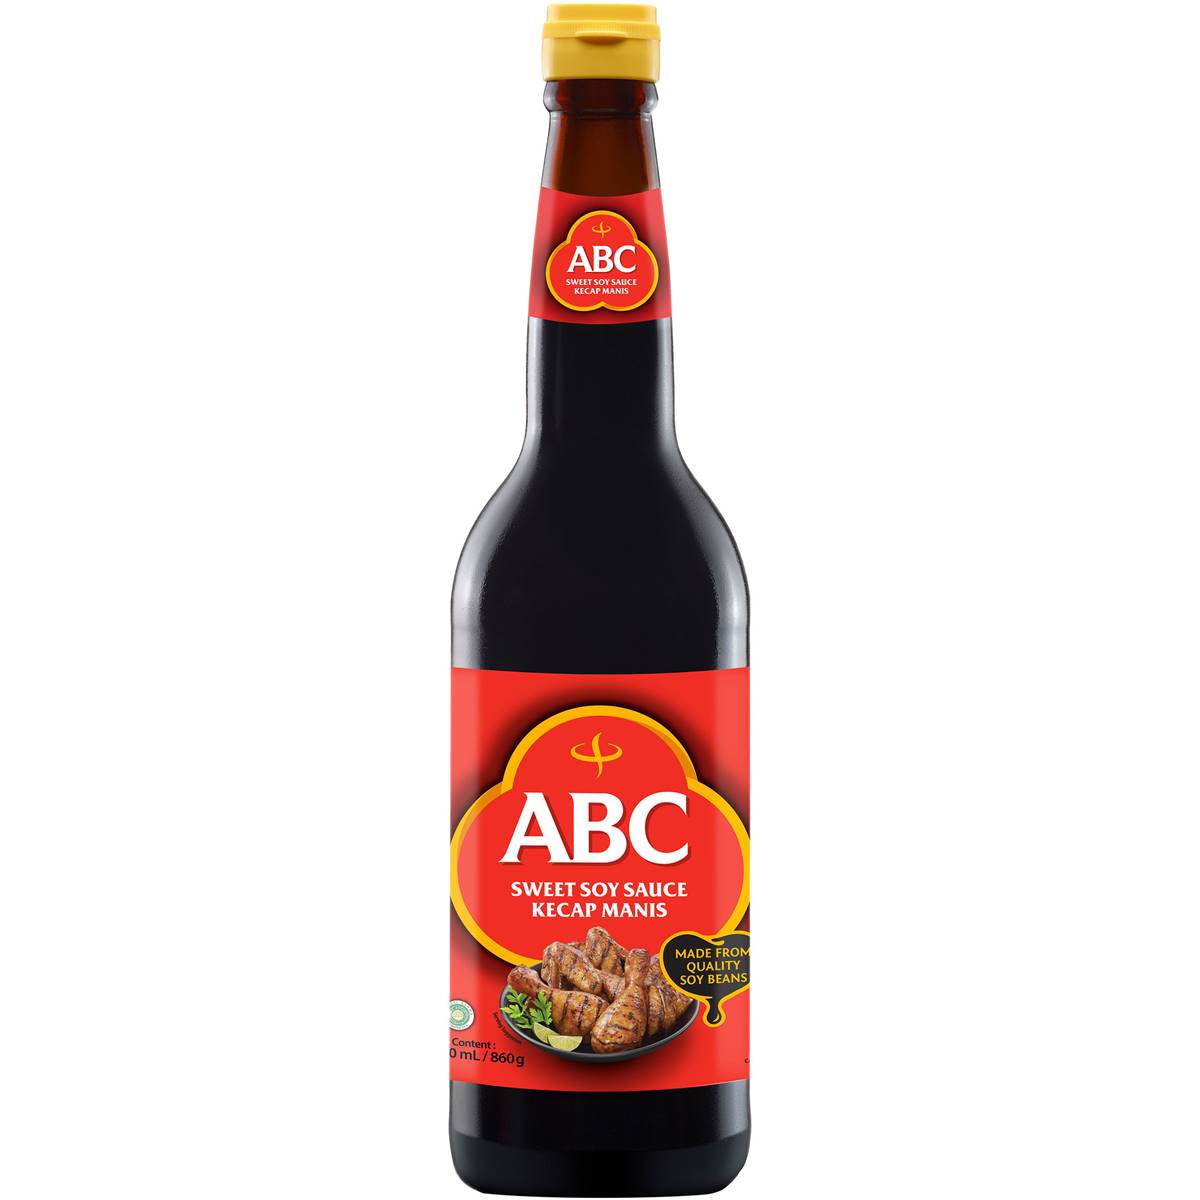 ABC Kecap Manis Sweet Soy Sauce 620g